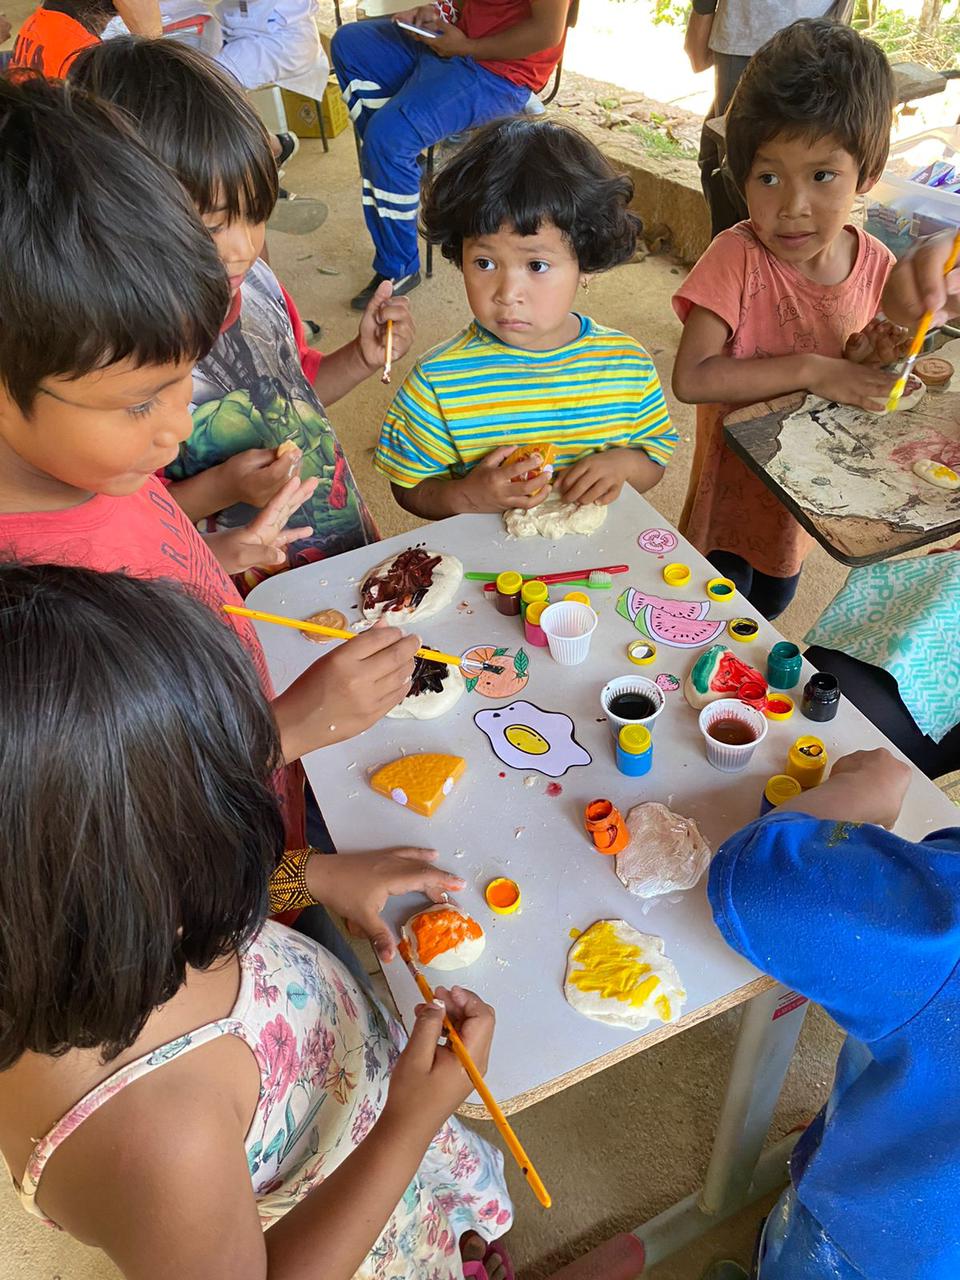 Na imagem, aparecem cinco crianças indígenas pintando massinhas de modelar que representam alimentos saudáveis e processados, em ação de orientação alimentar